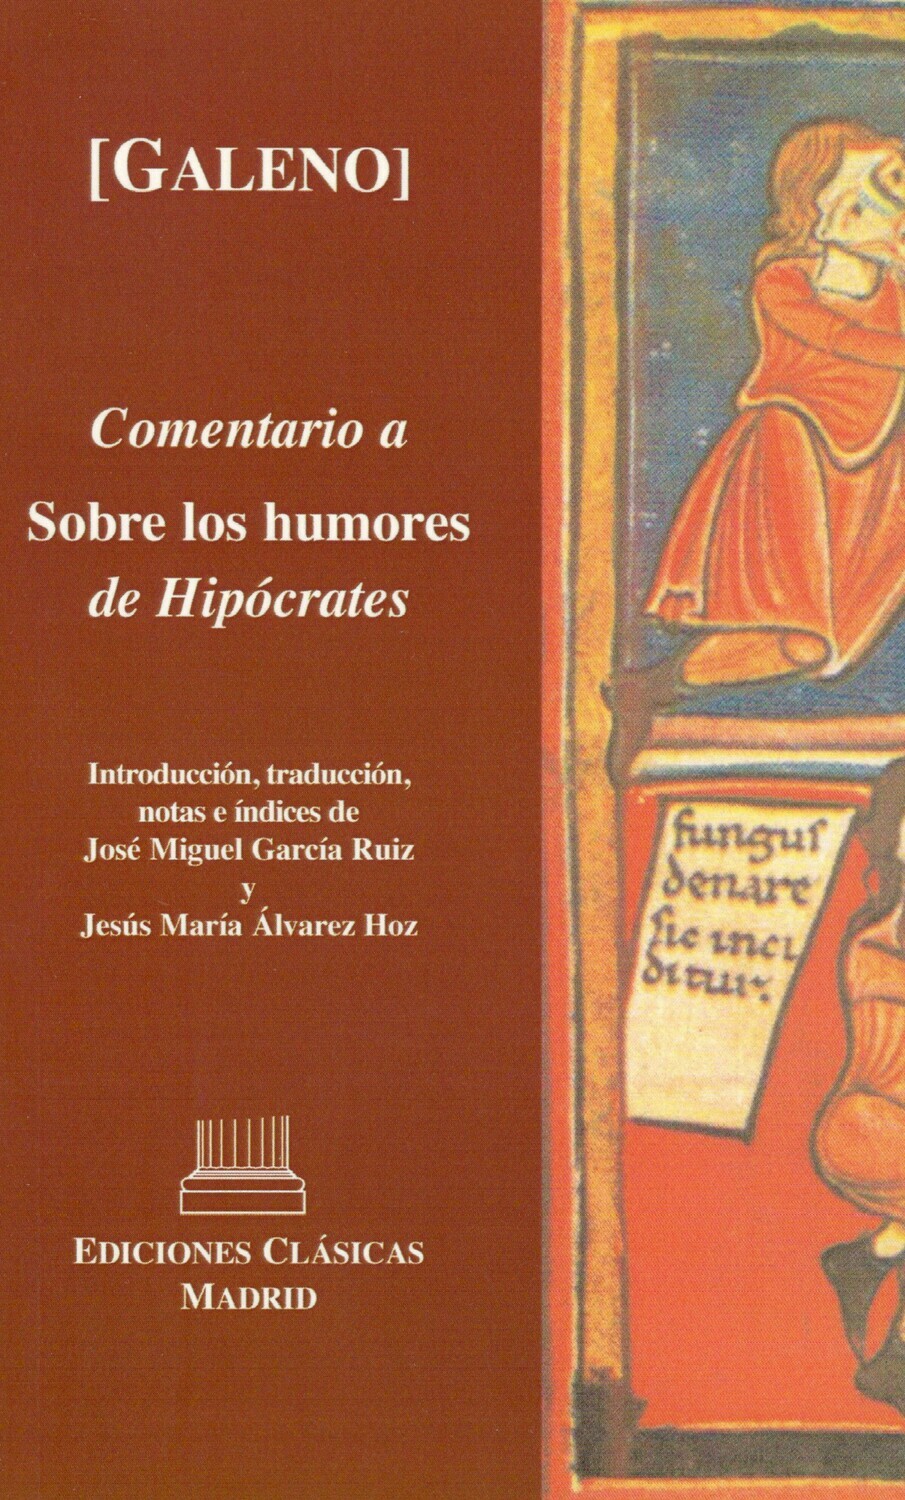 [GALENO]. COMENTARIO A SOBRE LOS HUMORES DE HIPOCRATES